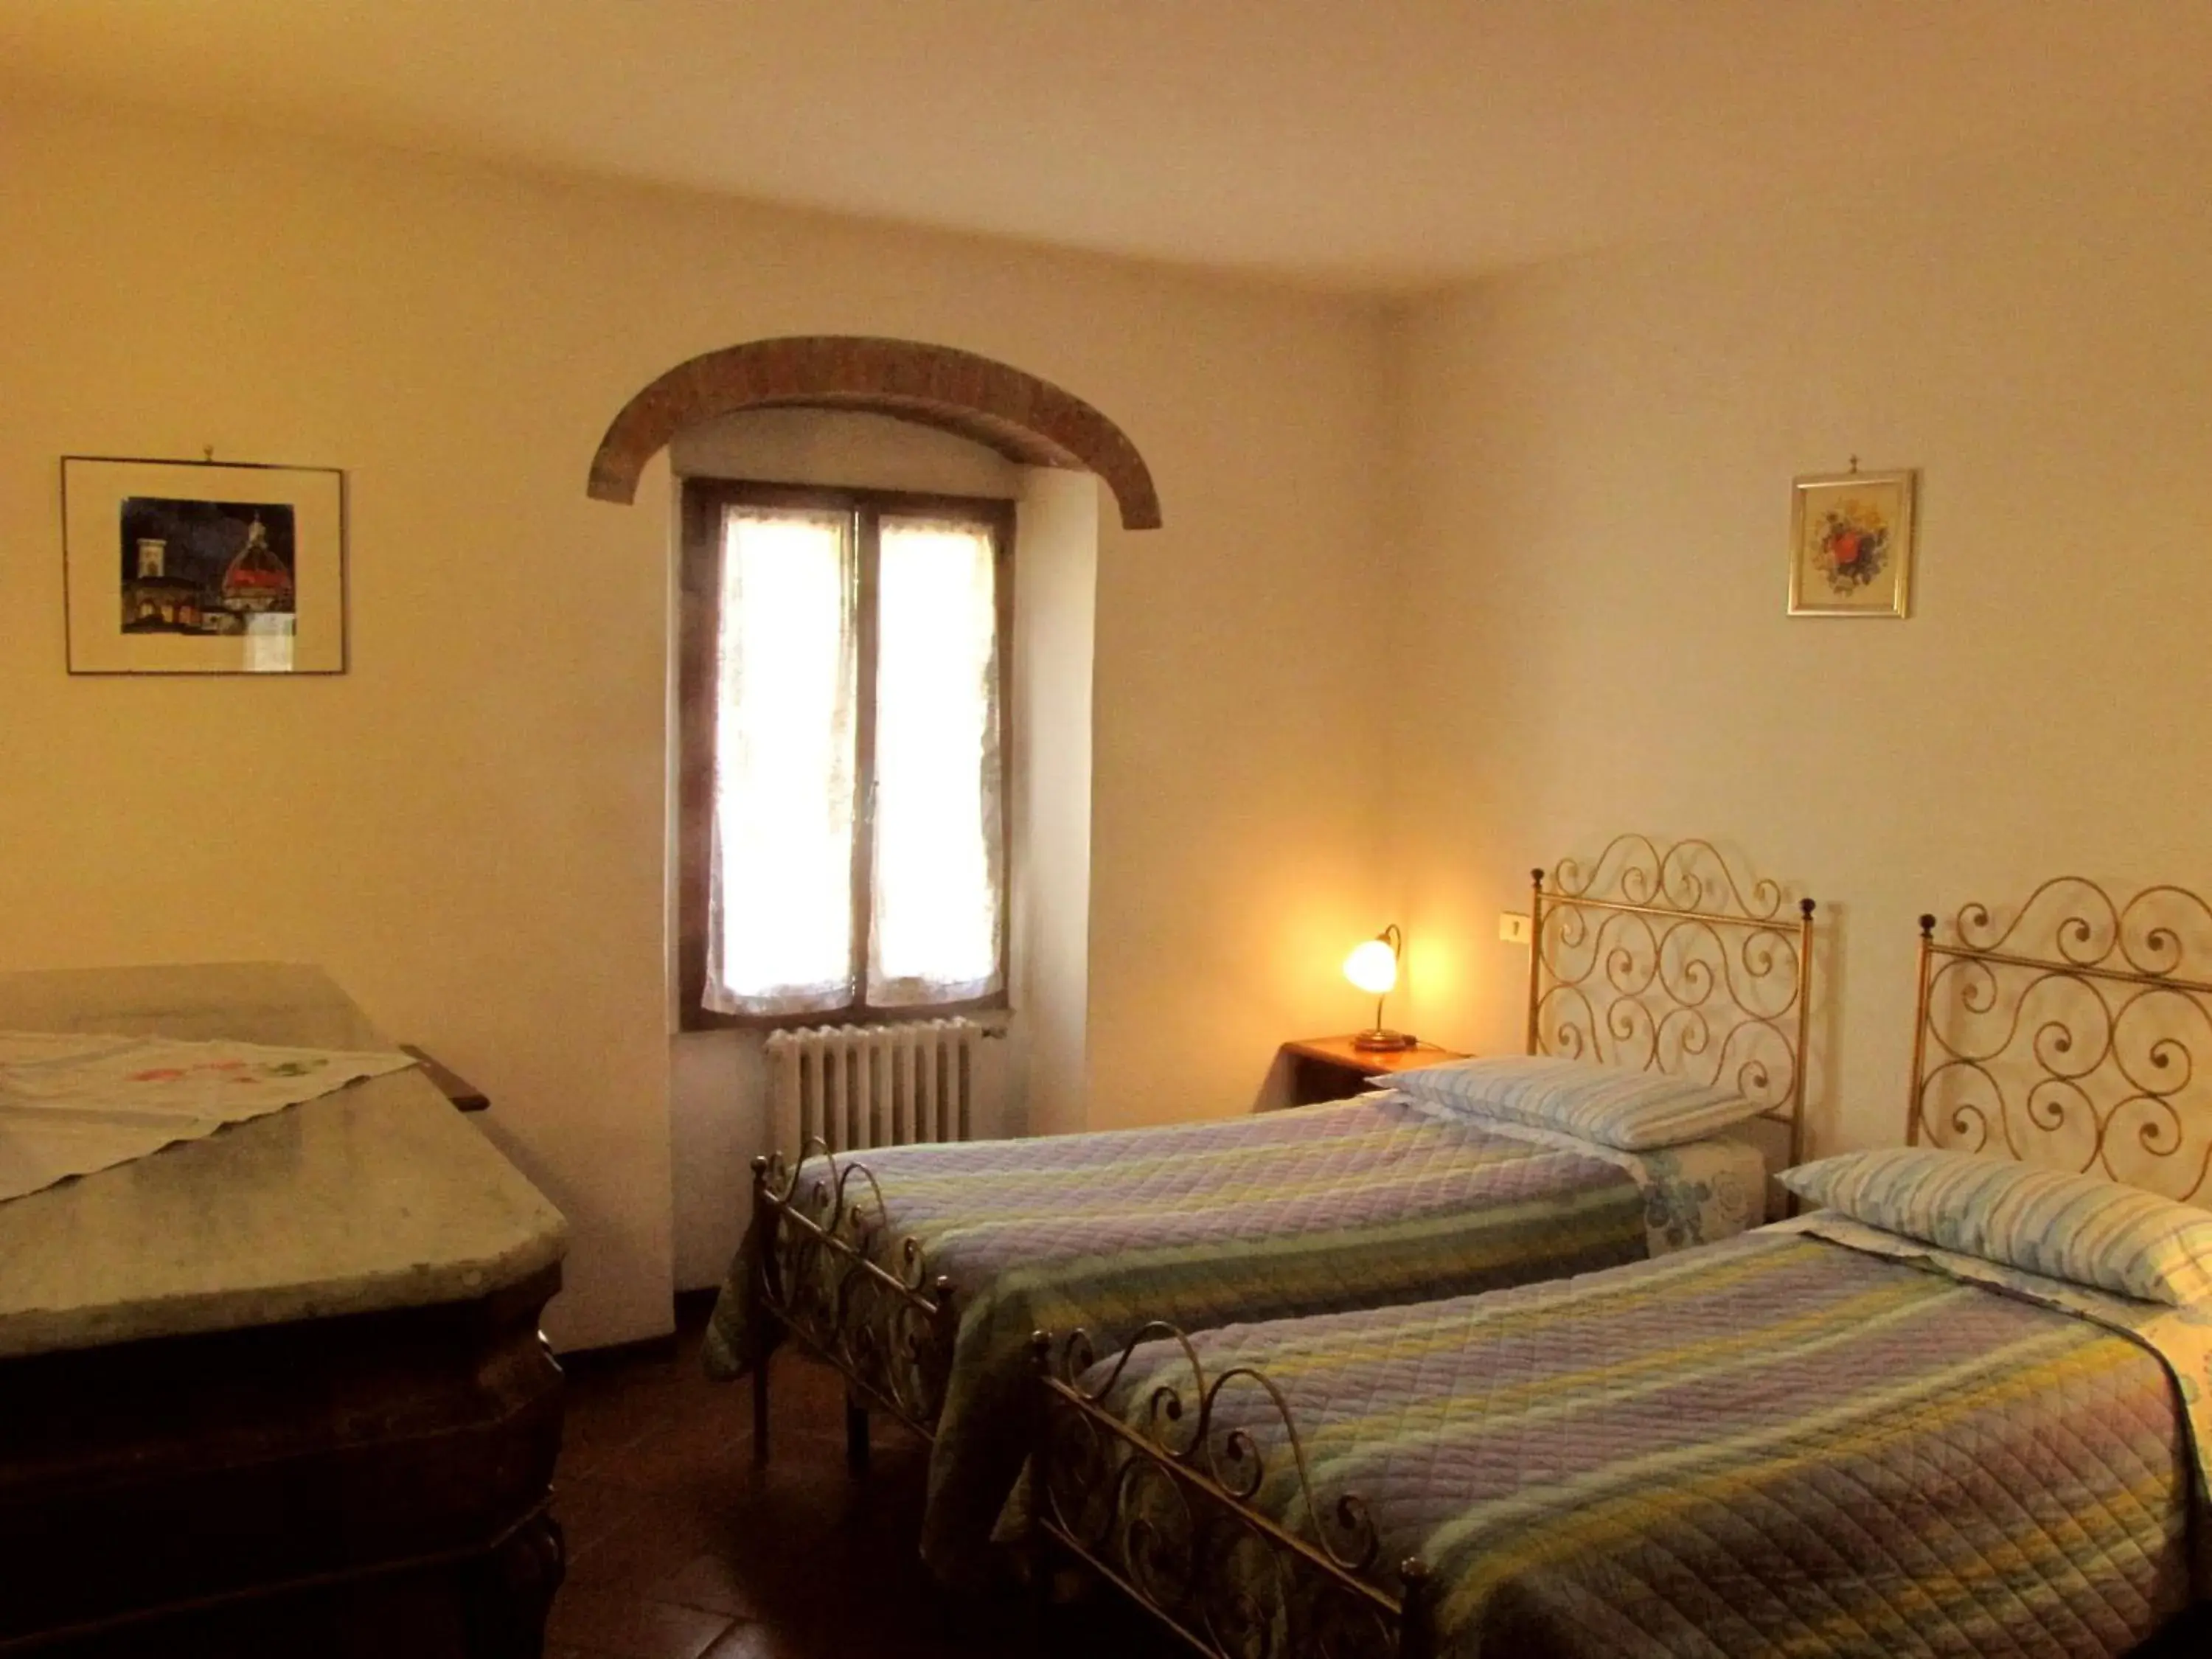 Bedroom, Room Photo in Residence Casprini da Omero